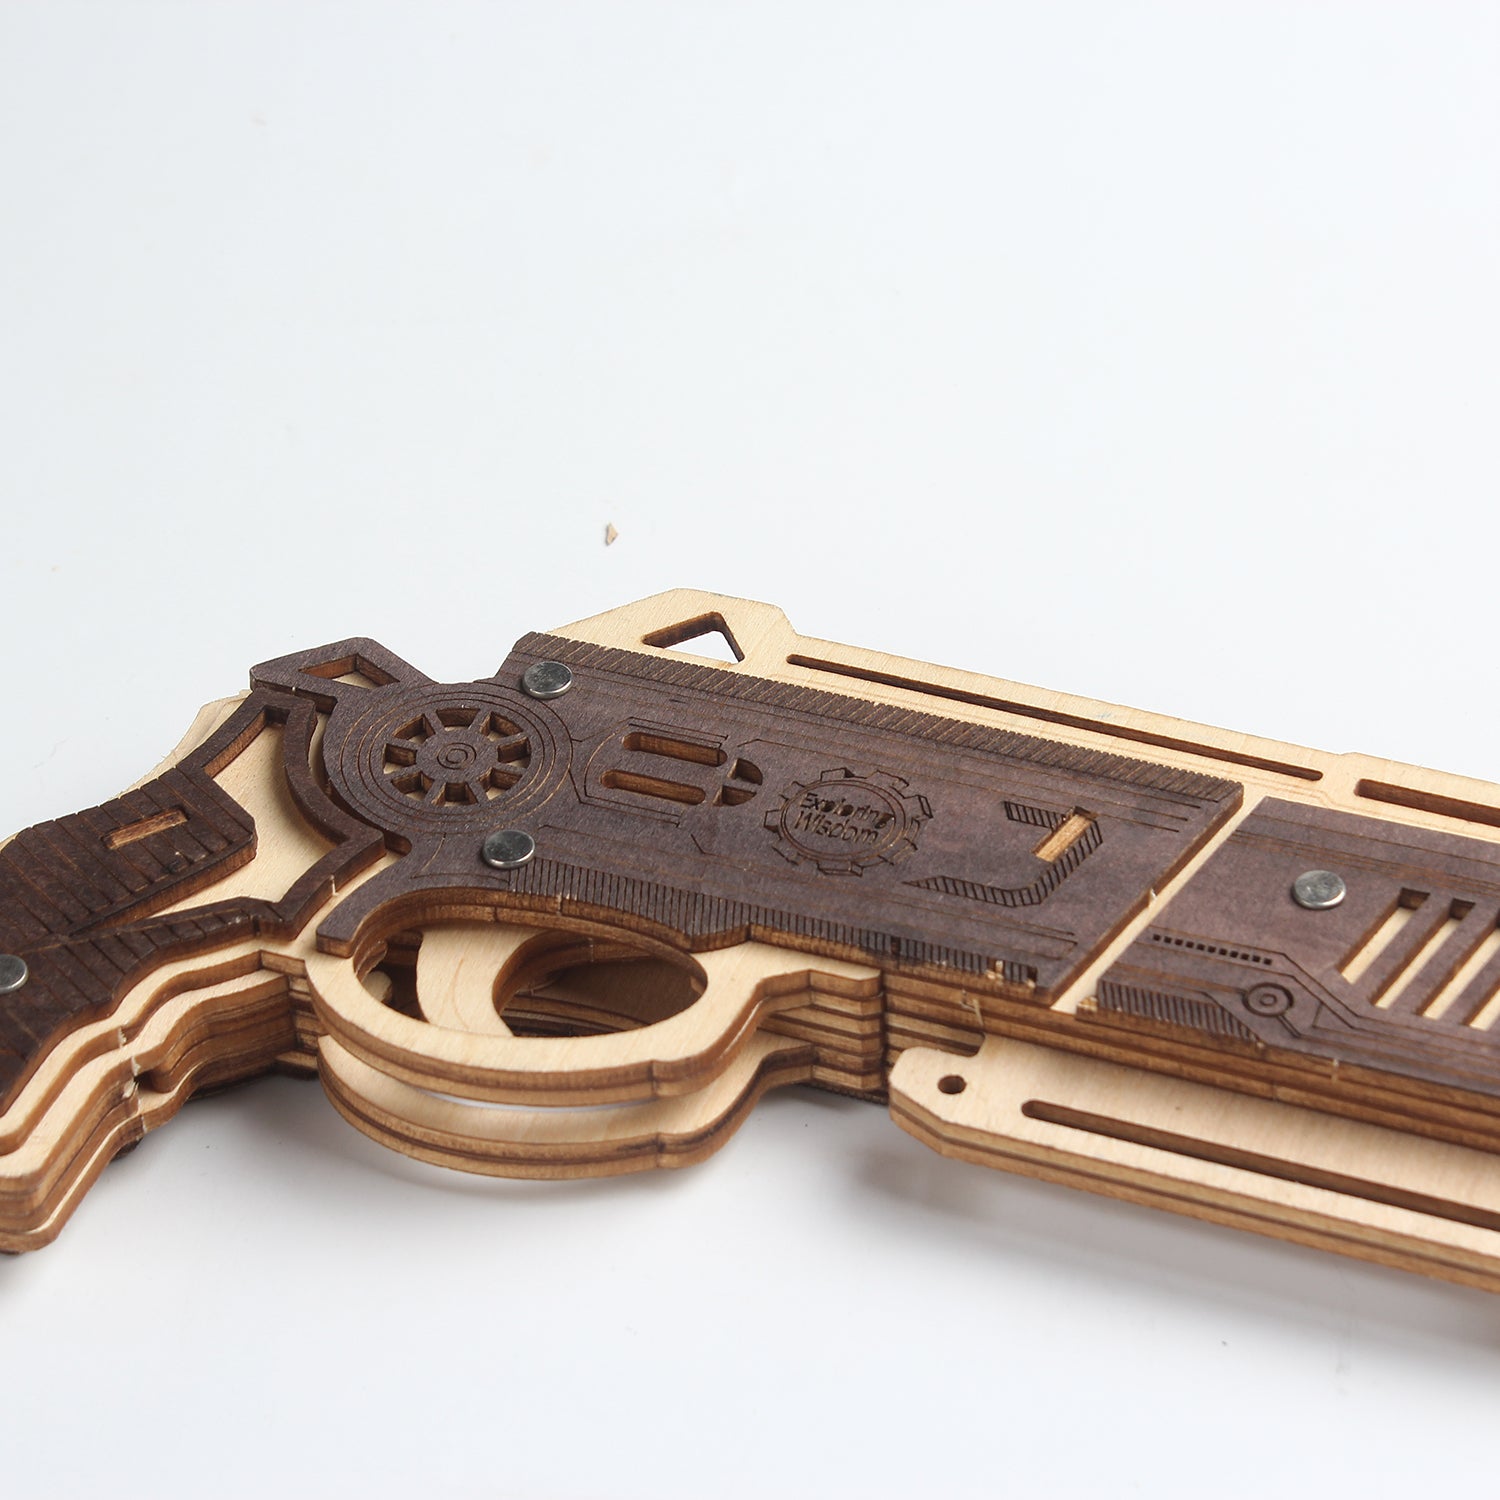 TSZH 009 DIY Guns Kit |Birthday Gift | Hobby